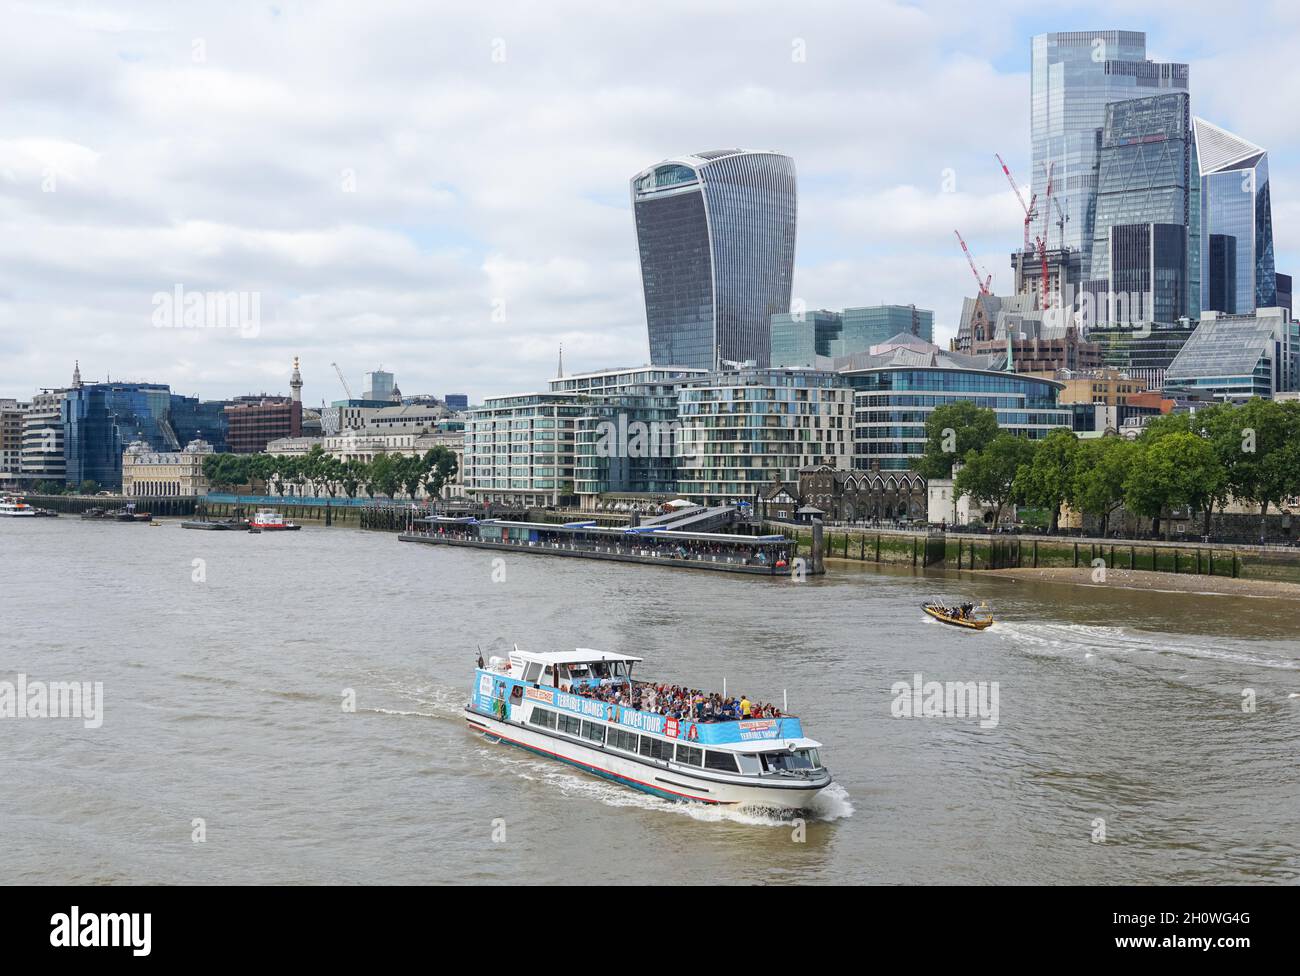 Bateau de croisière sur la Tamise en passant par la ville de Londres, Angleterre Royaume-Uni Banque D'Images